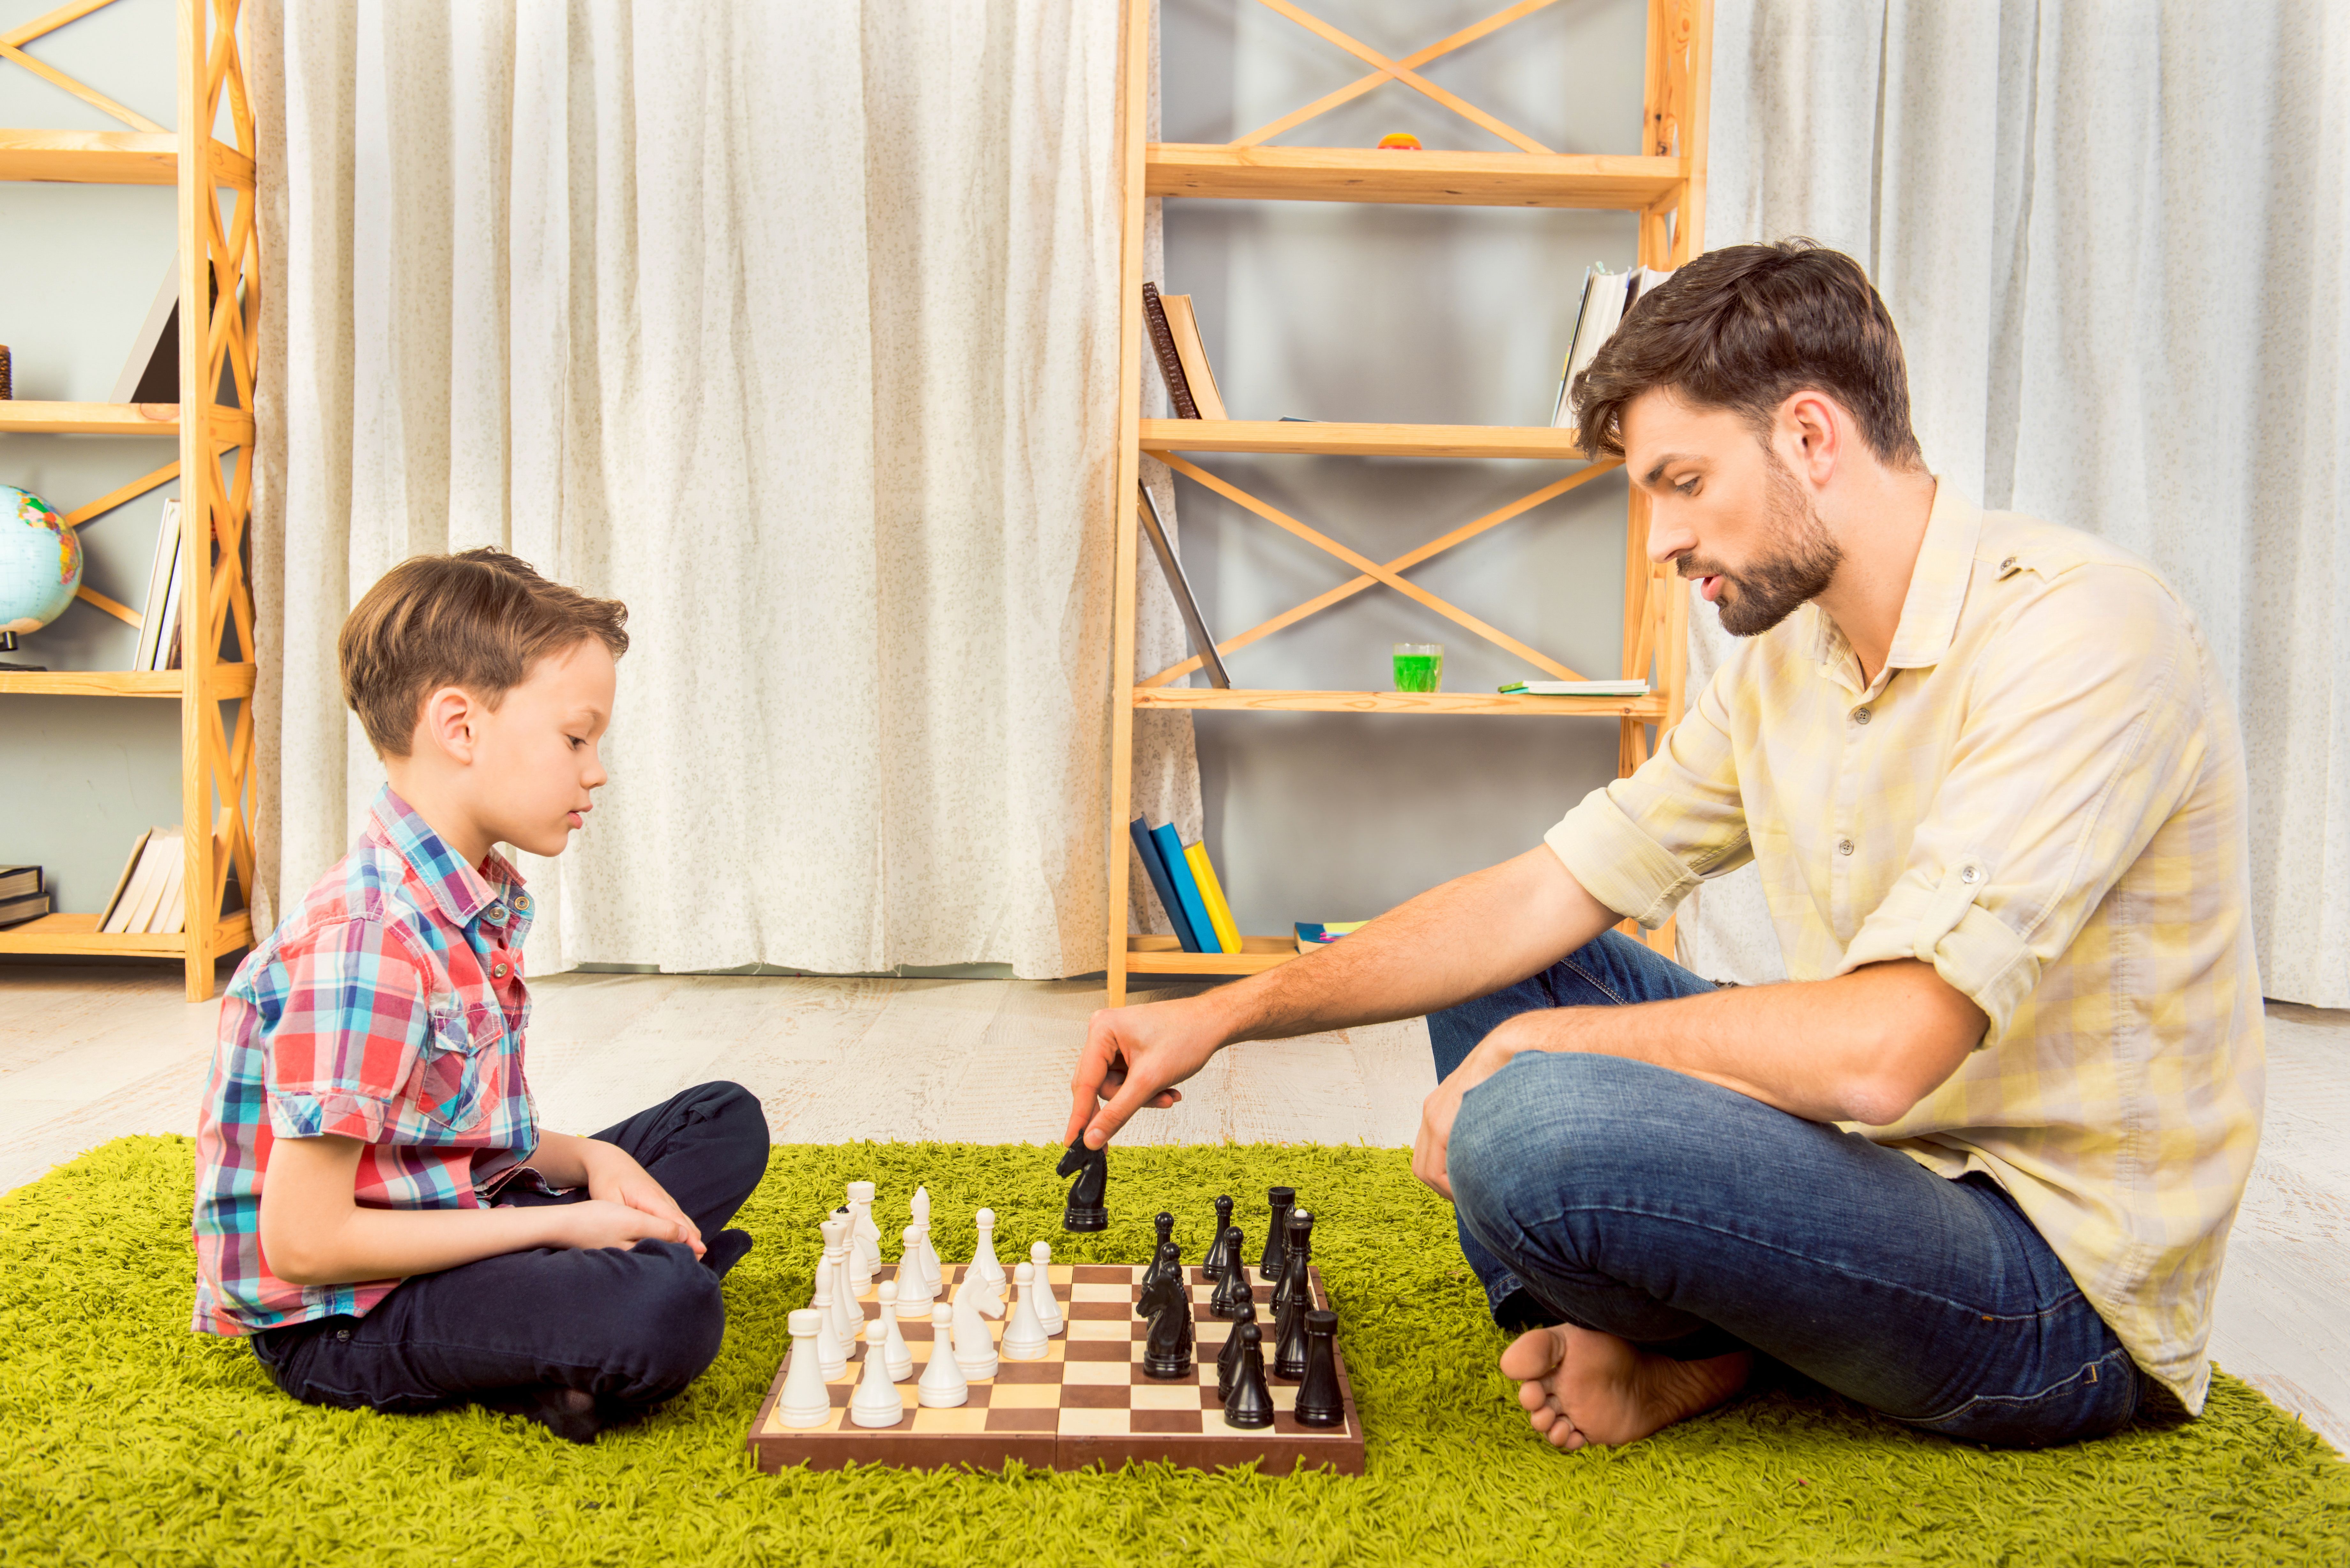 Папа играет в шахматы. Папа с сыном играют в шахматы. Играющие в шахматы сын и отец. Папа с сыном играют в шахматы фото.